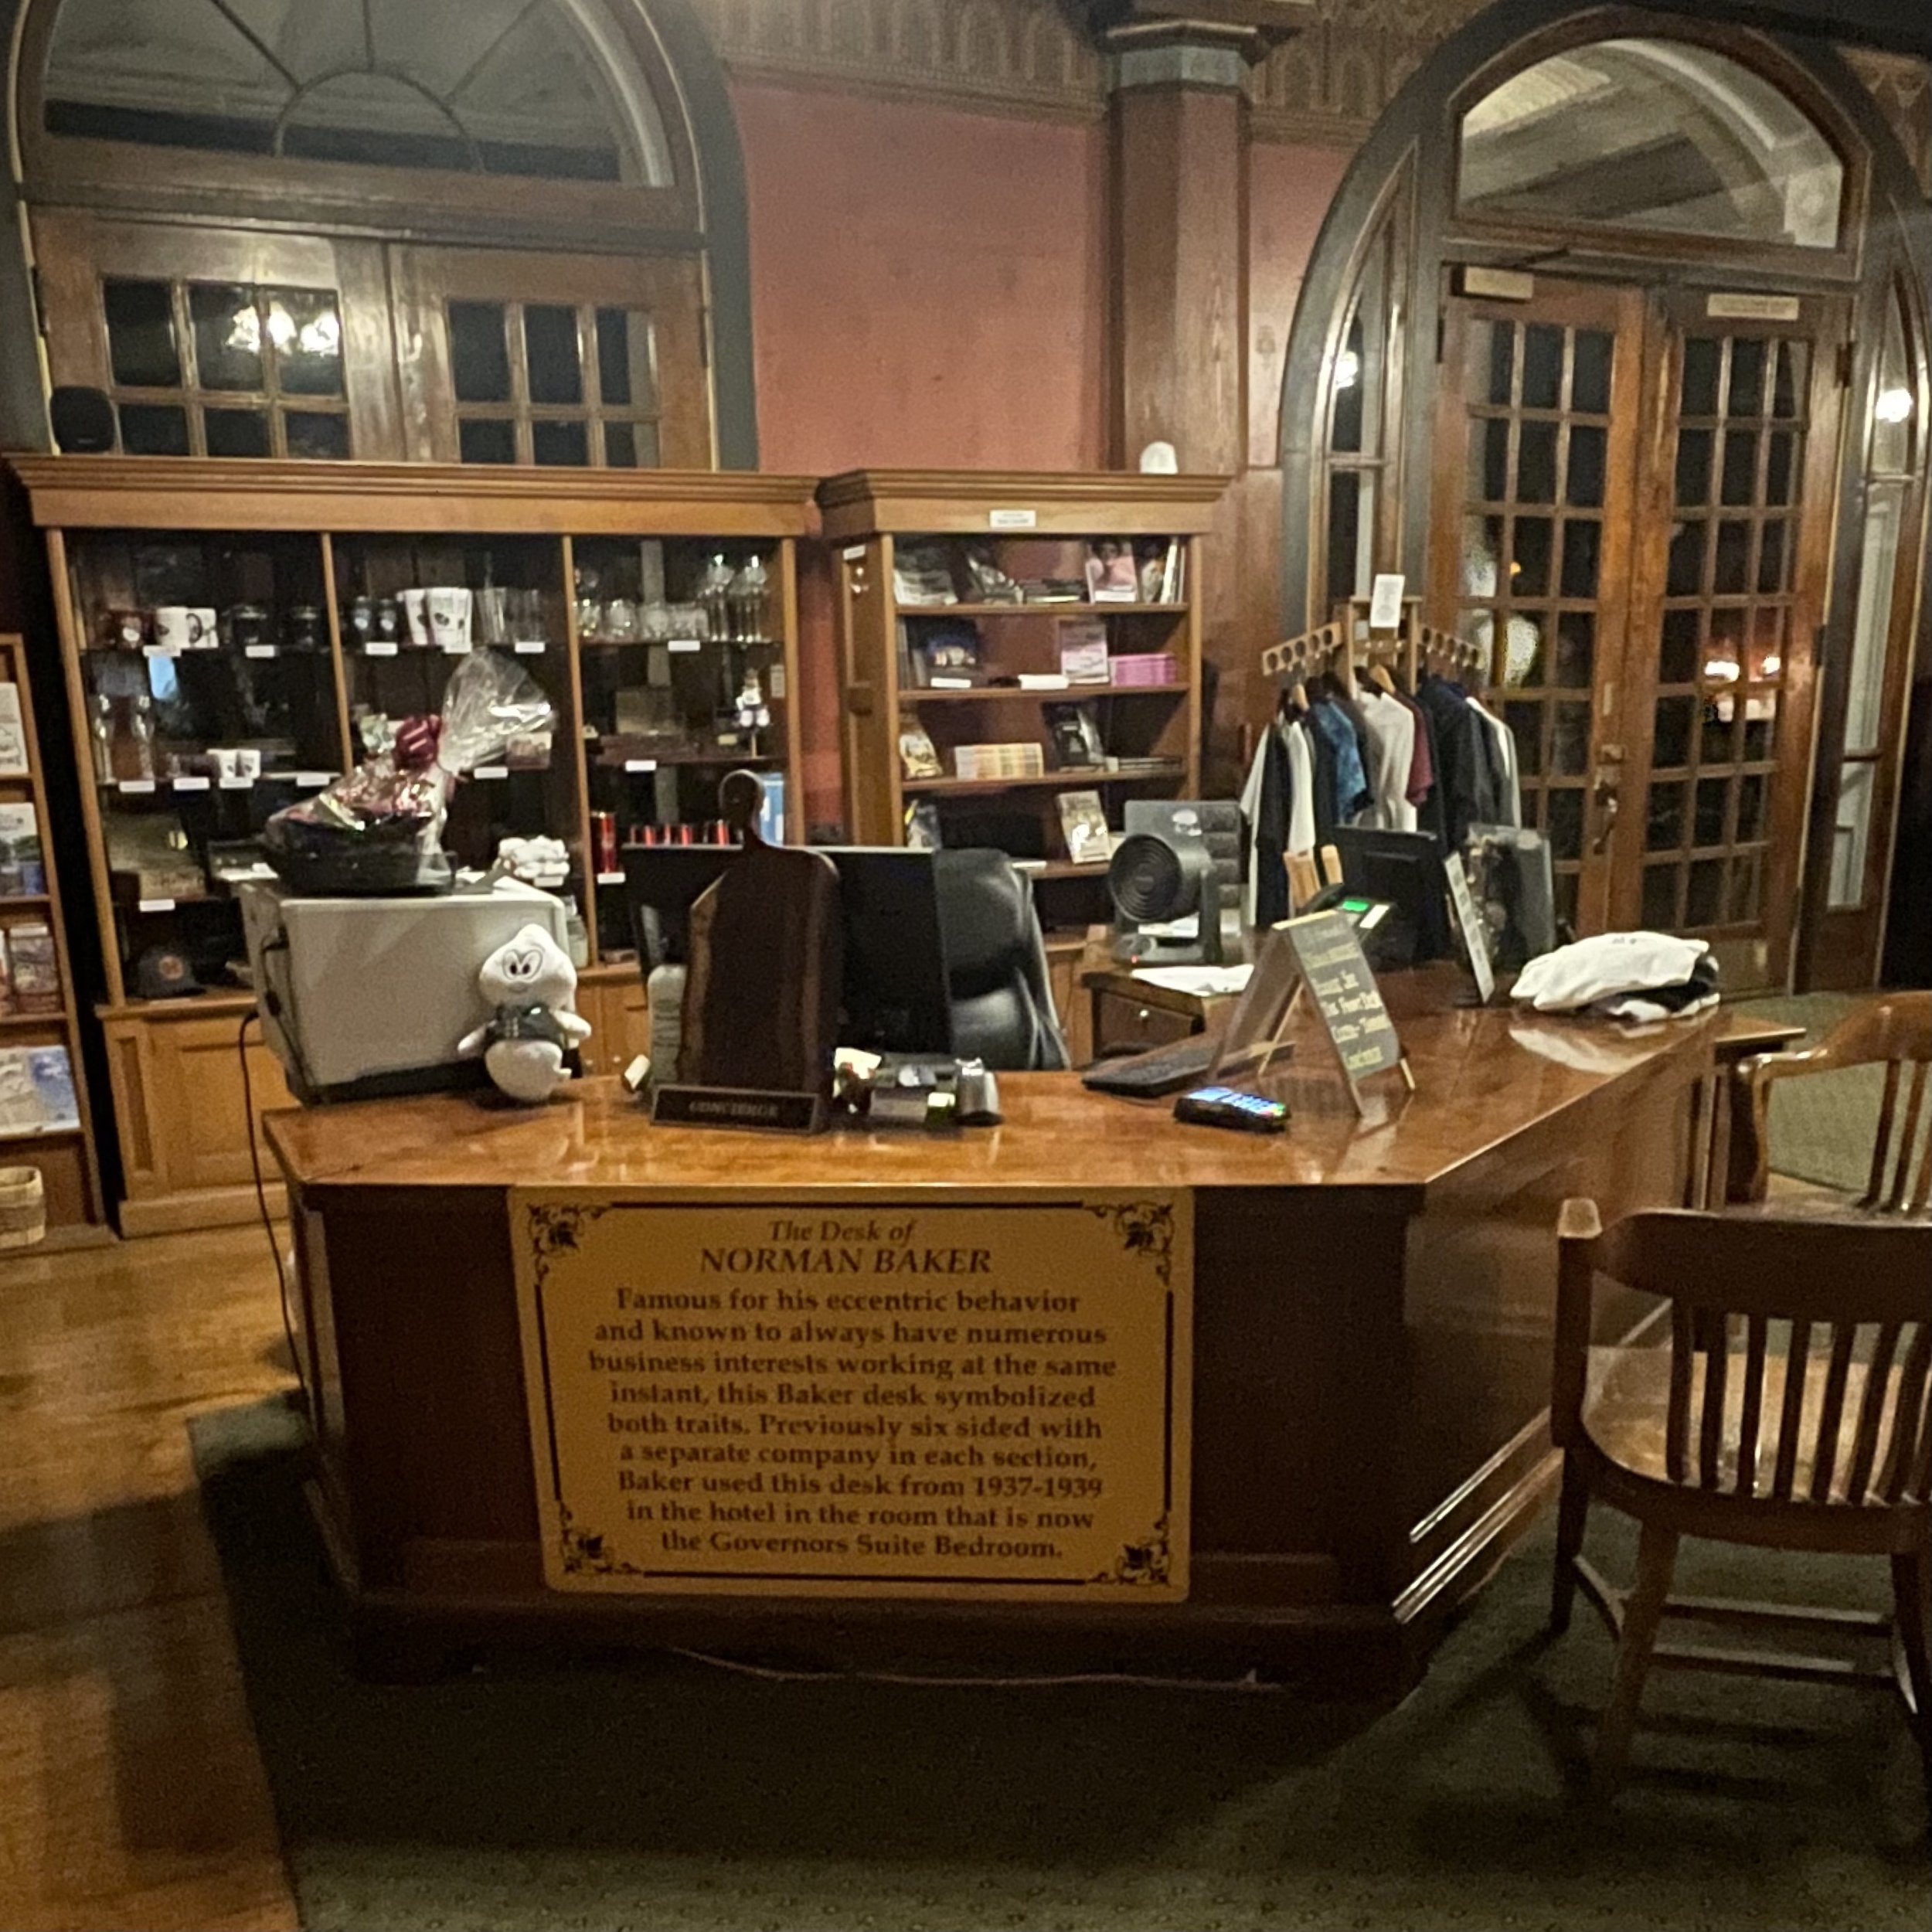 Norman Baker's desk at the crescent hotel in eureka springs arkansas.jpg